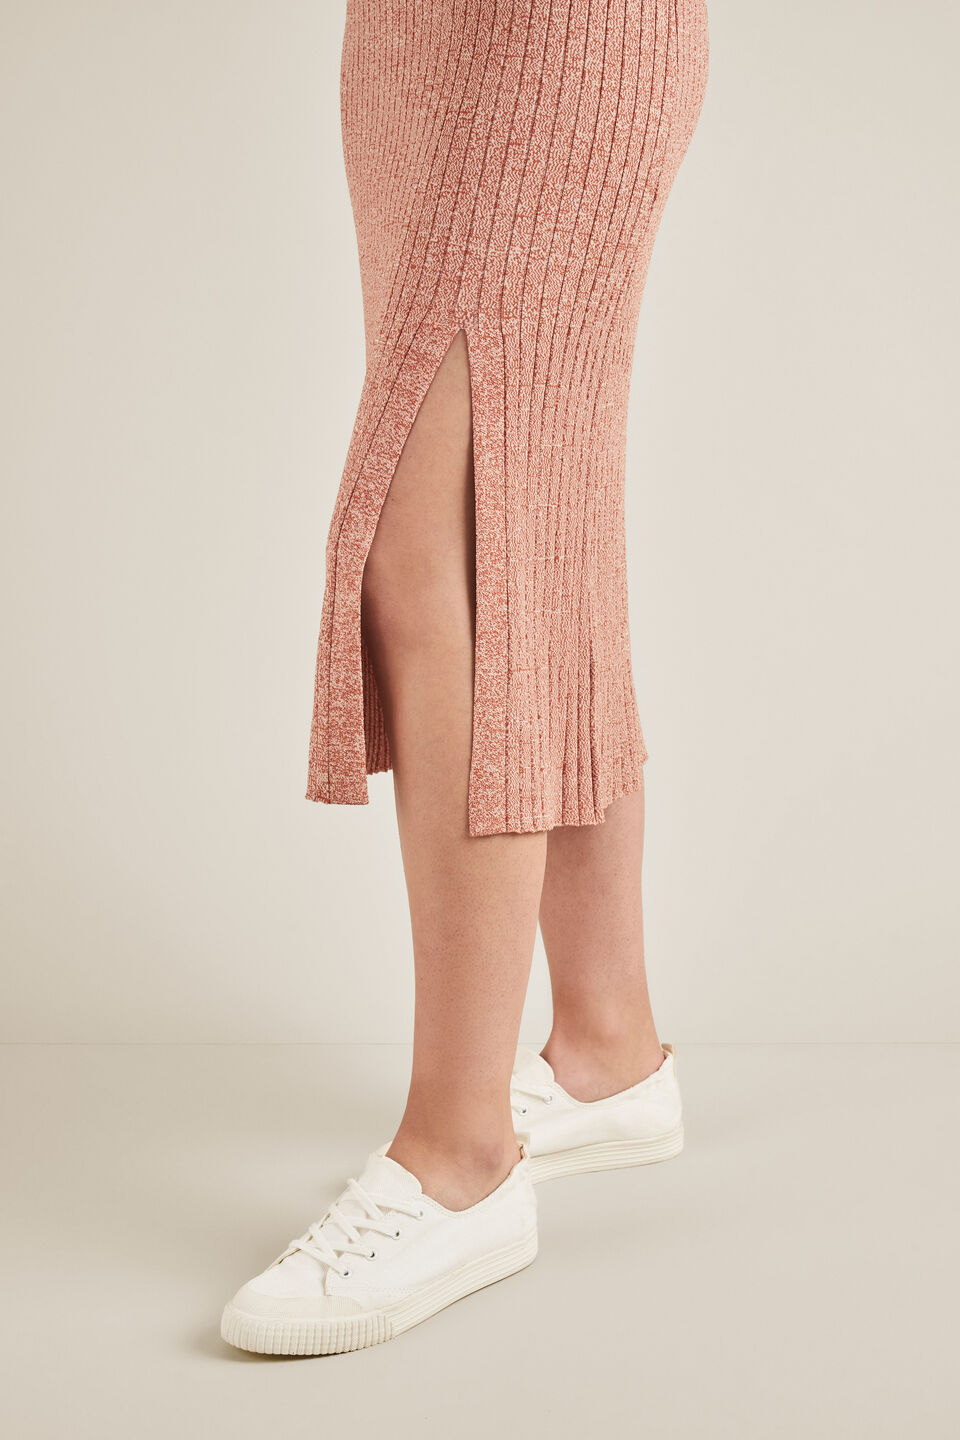 Space Dye Knit Skirt  